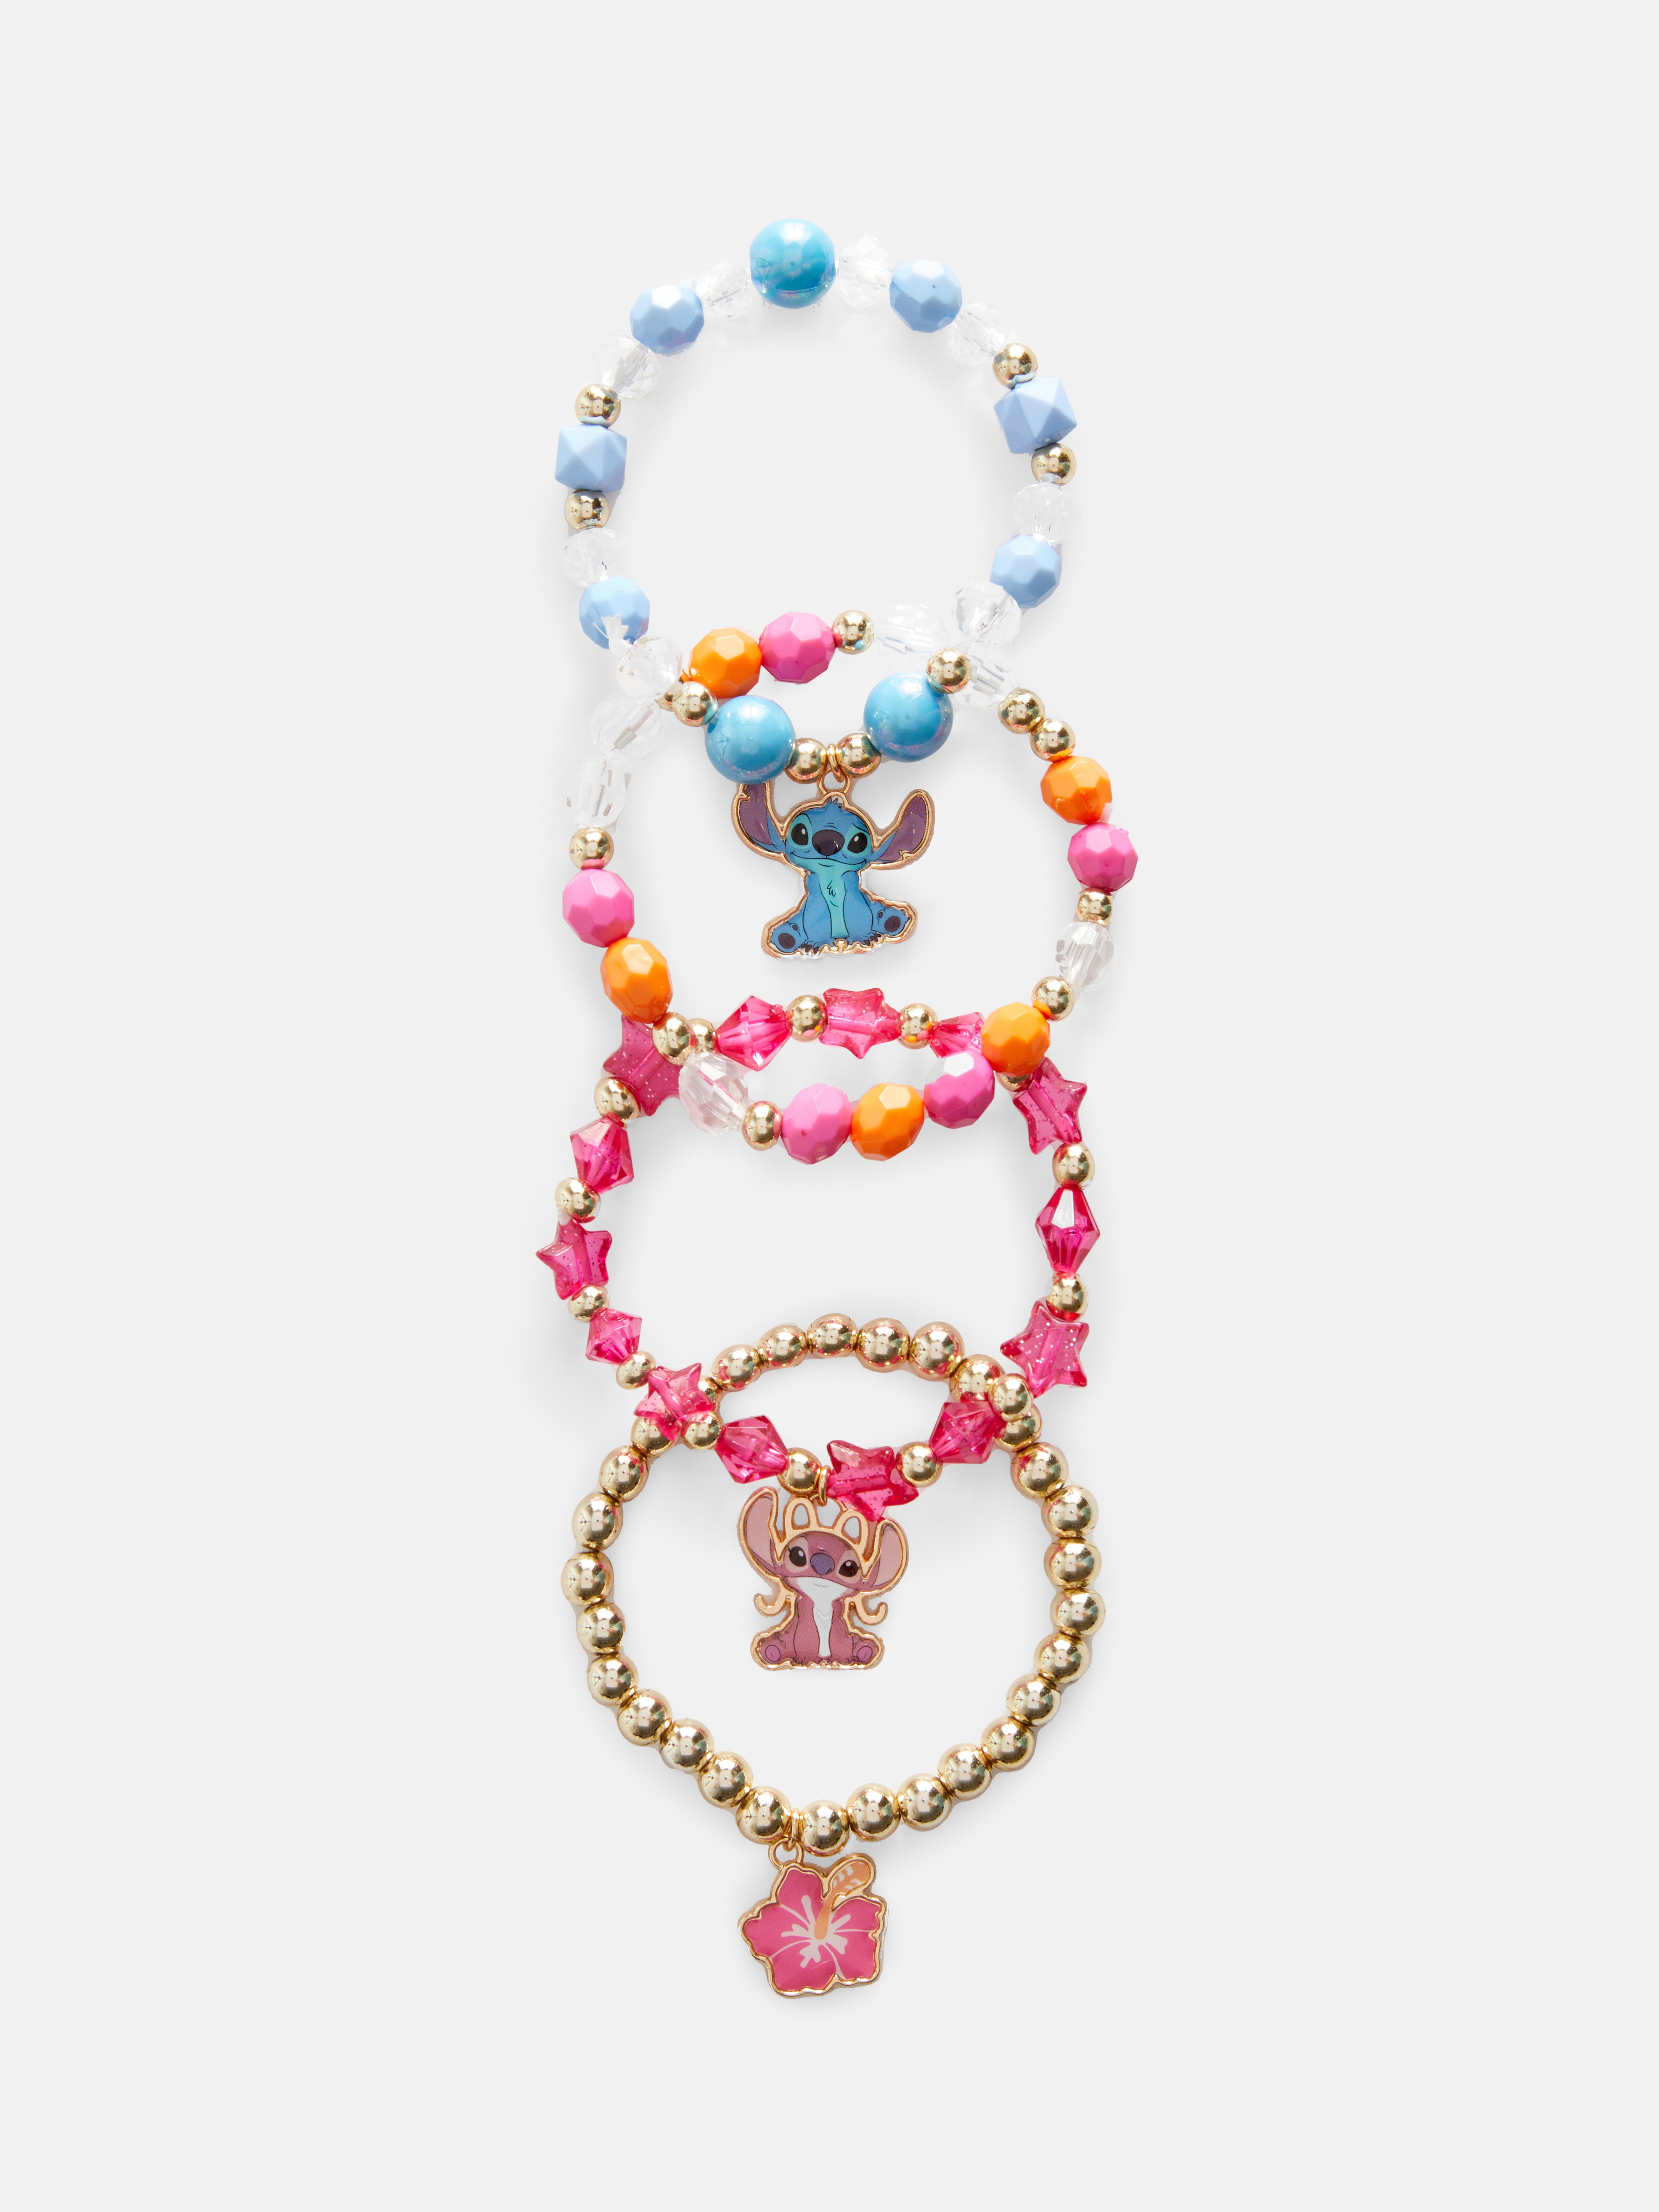 4pk Disney's Lilo & Stitch Charm Bracelets